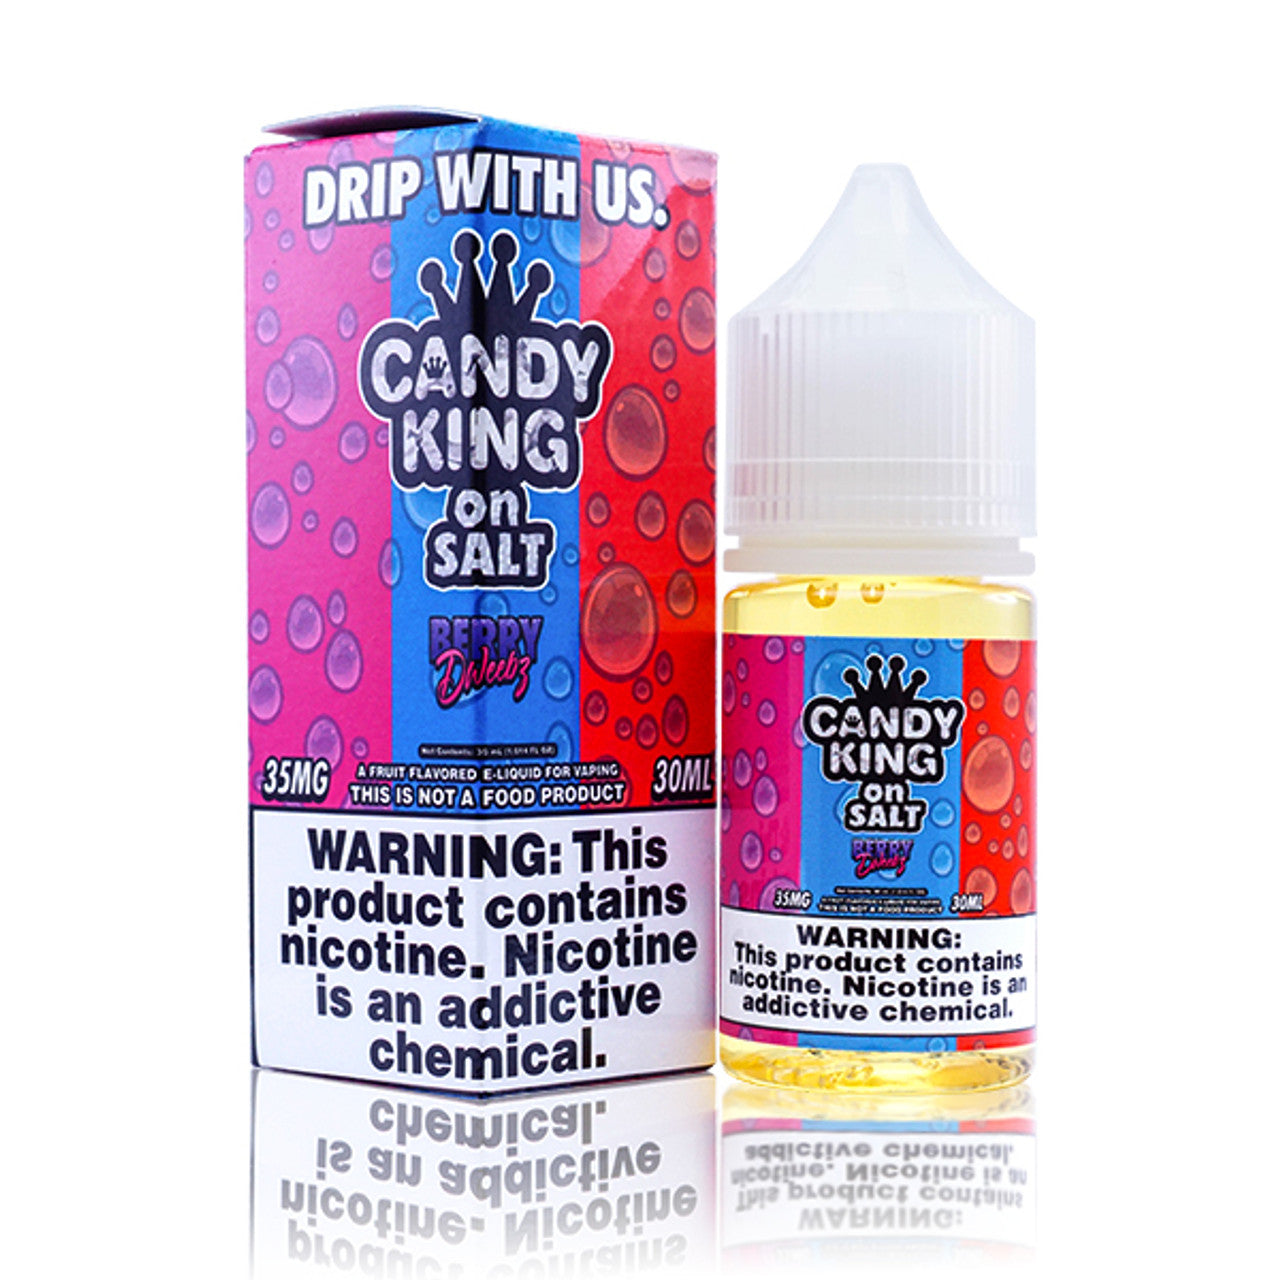 Candy King Salt Series E-Liquid 30mL (Salt Nic) Berry Dweebz with Packaging